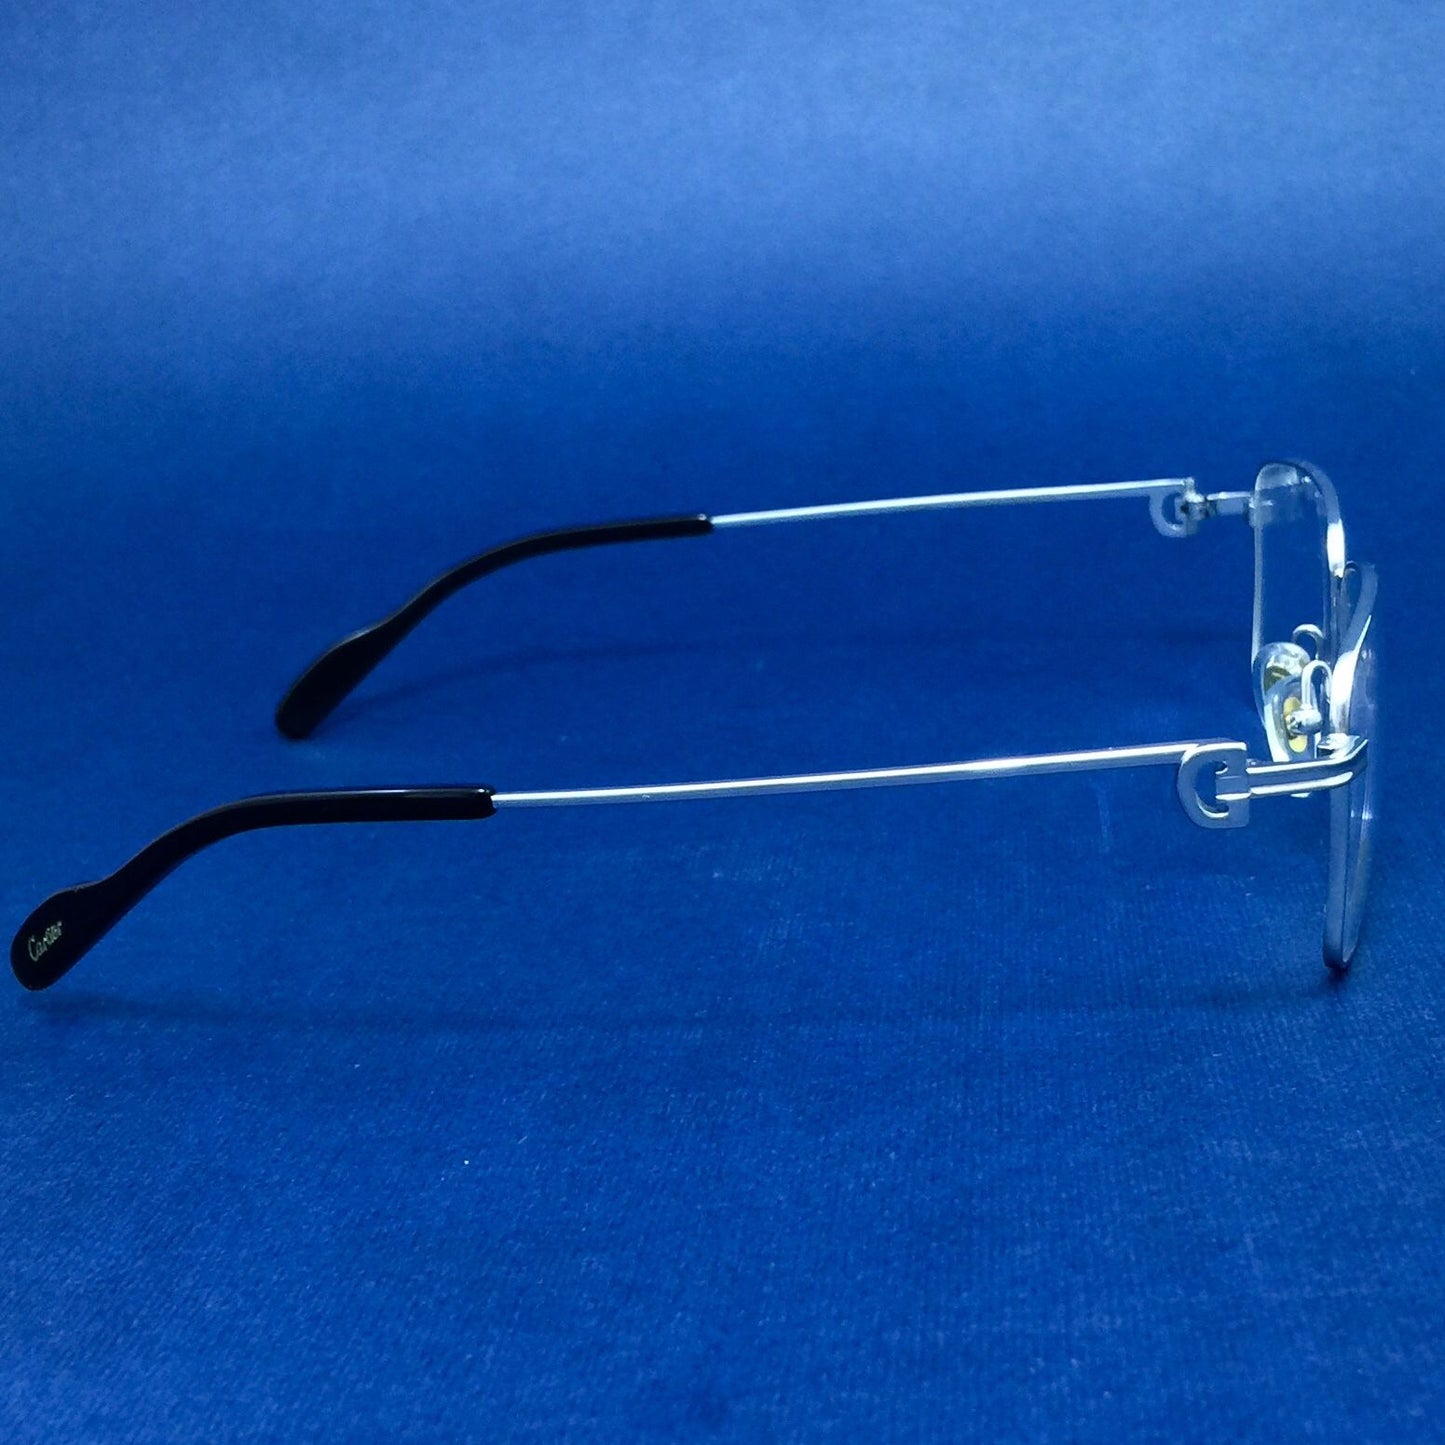 CT0260 نظارة مستطيلة الشكل من كارتييه